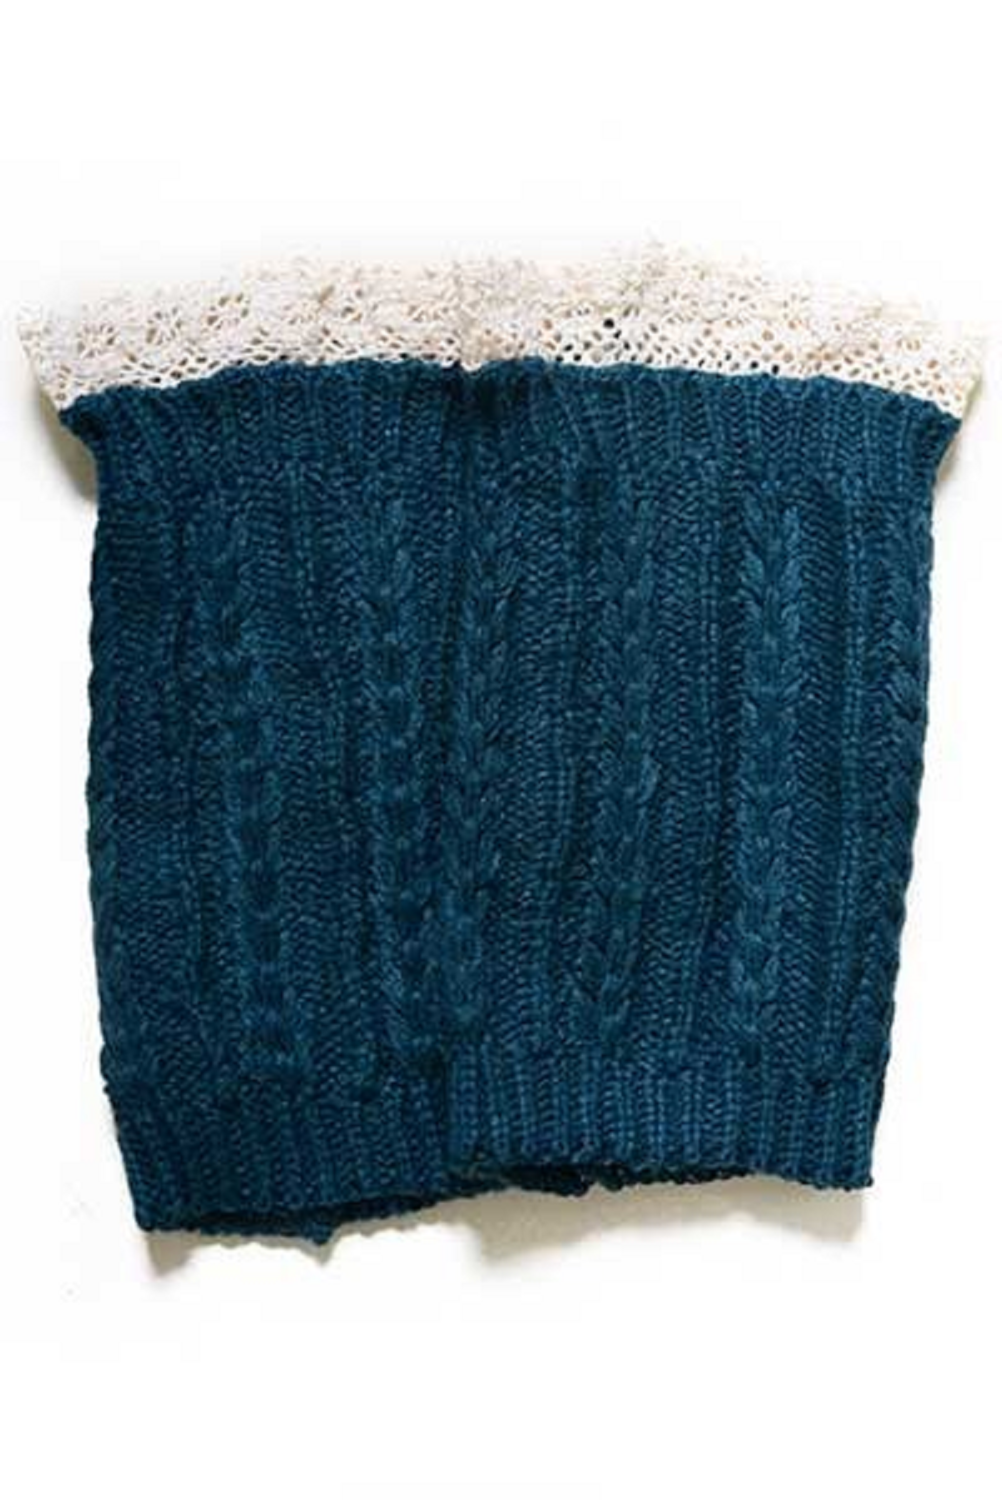 Women's Crochet Trim Short Leg Warmers-FOREST GREEN